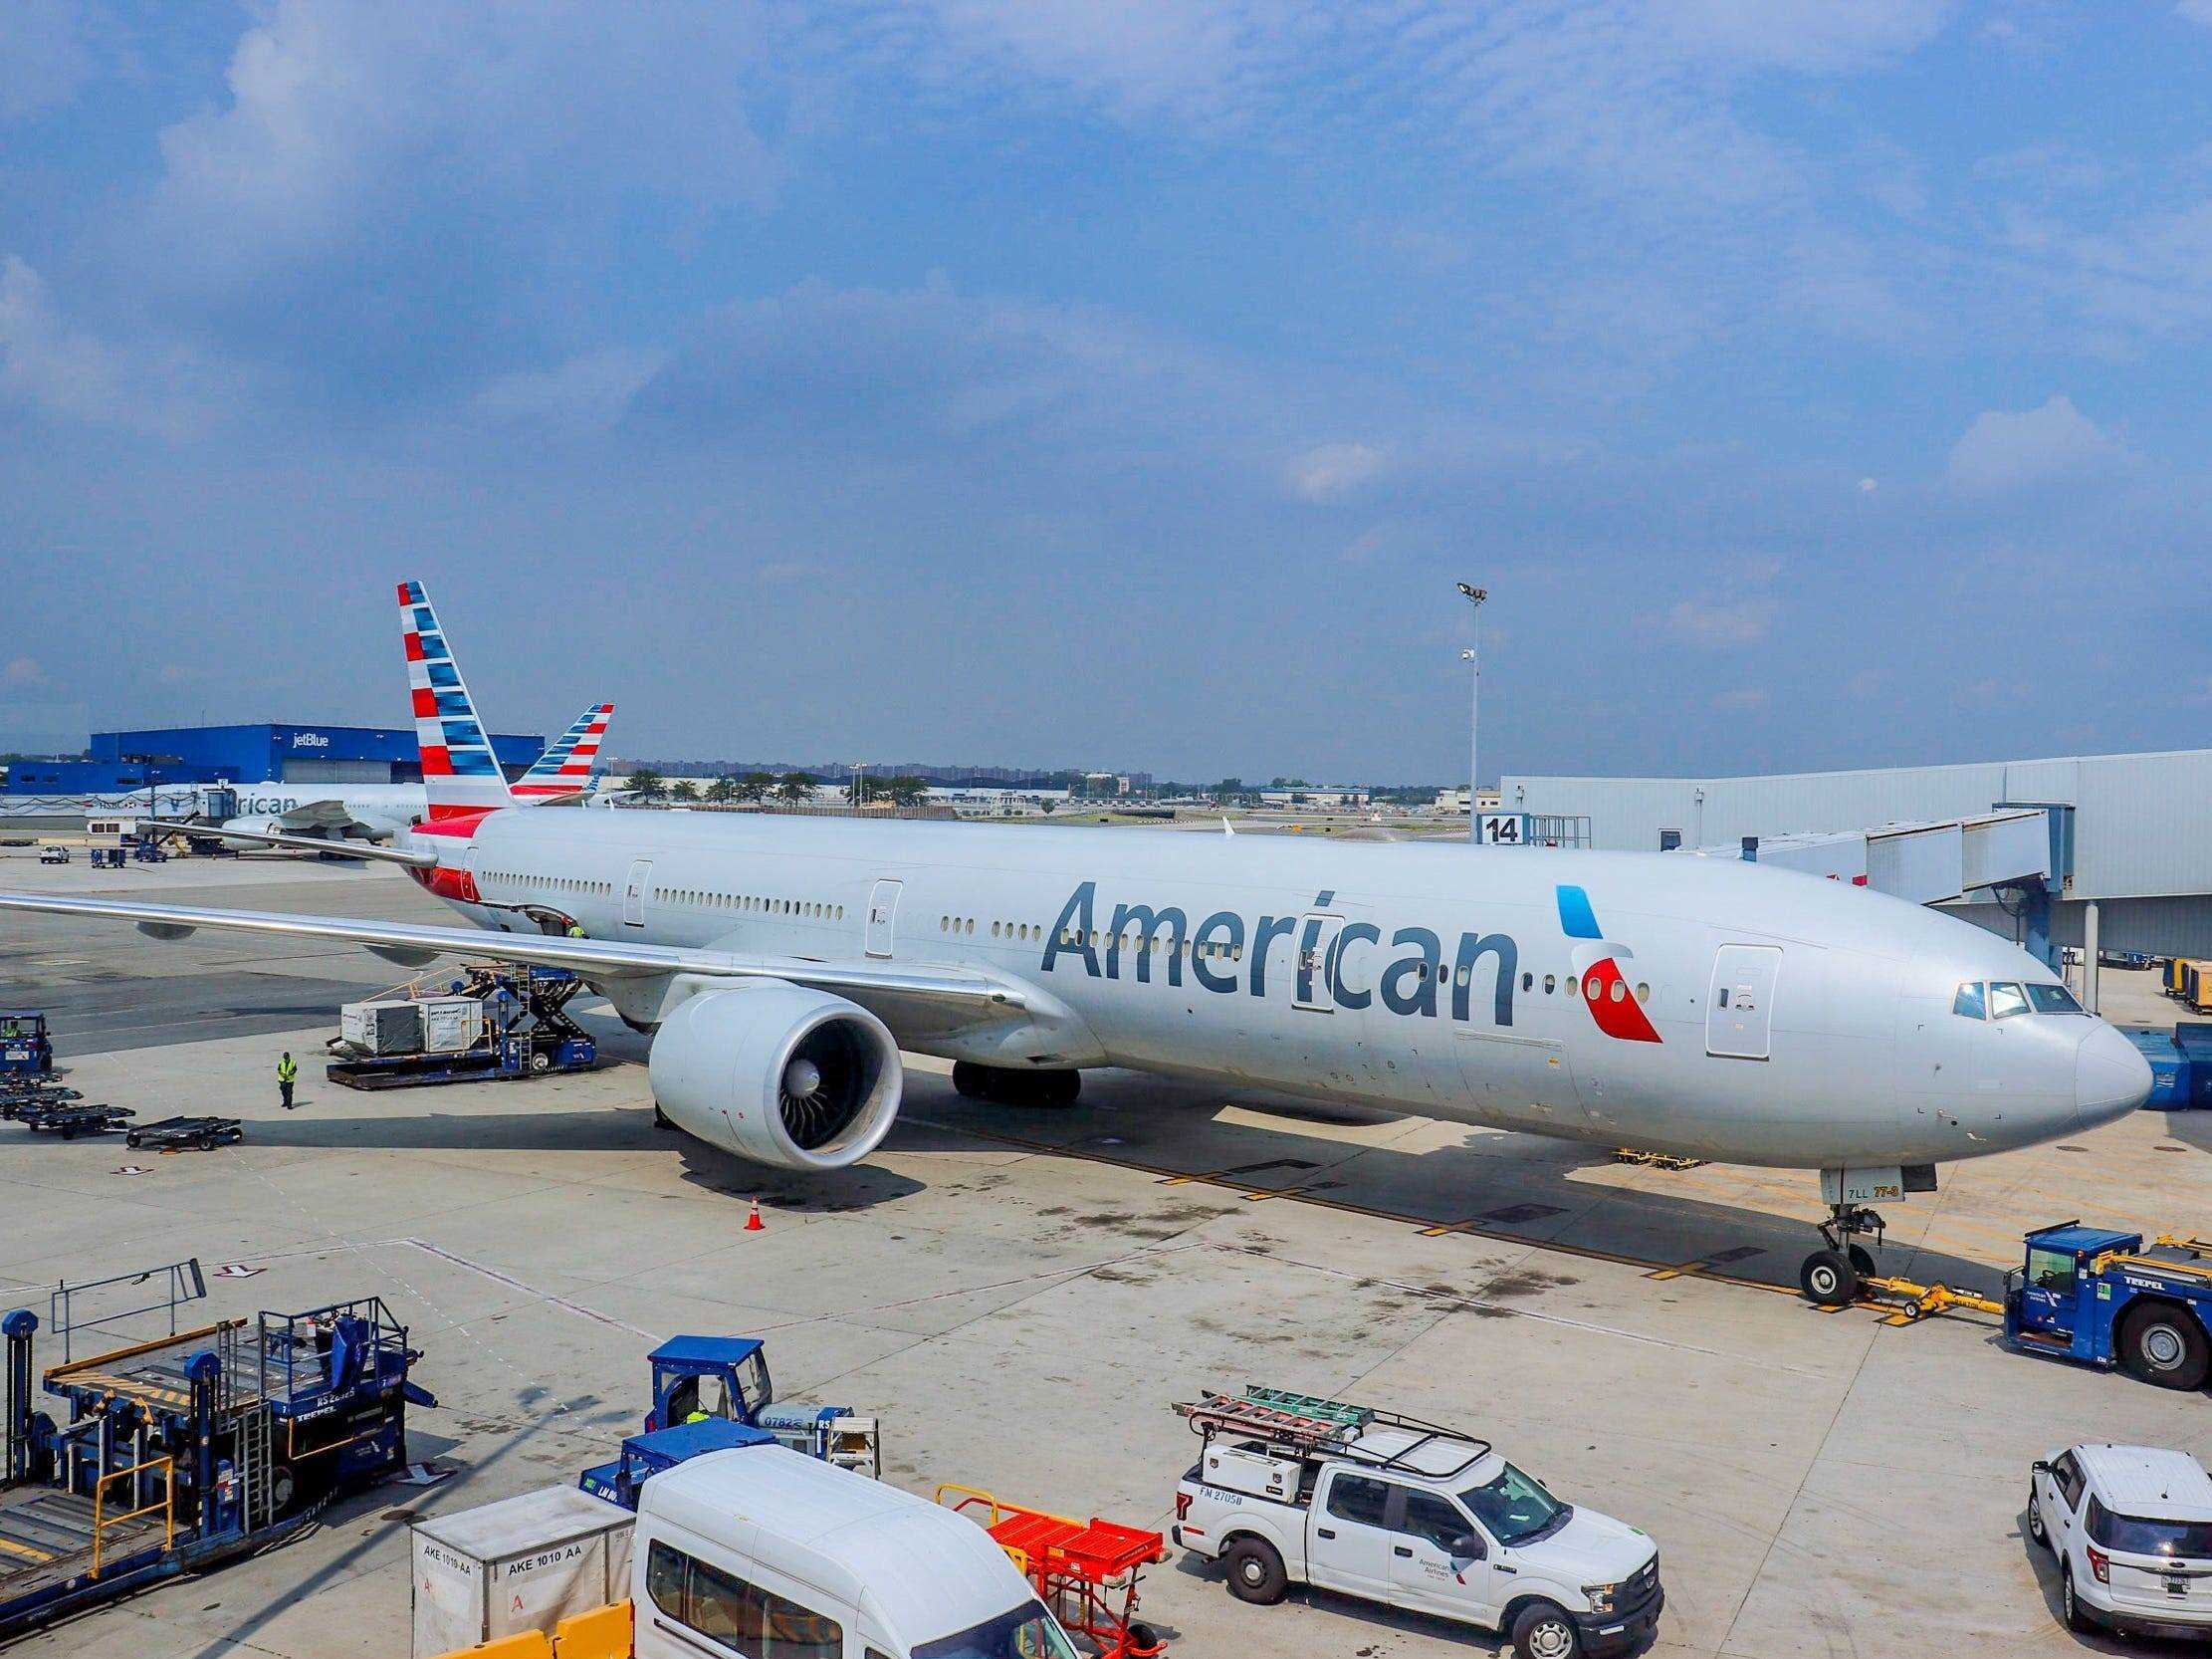 Fliegen mit American Airlines nach Europa während der Pandemie — American Airlines New York-Madrid Flug 2021